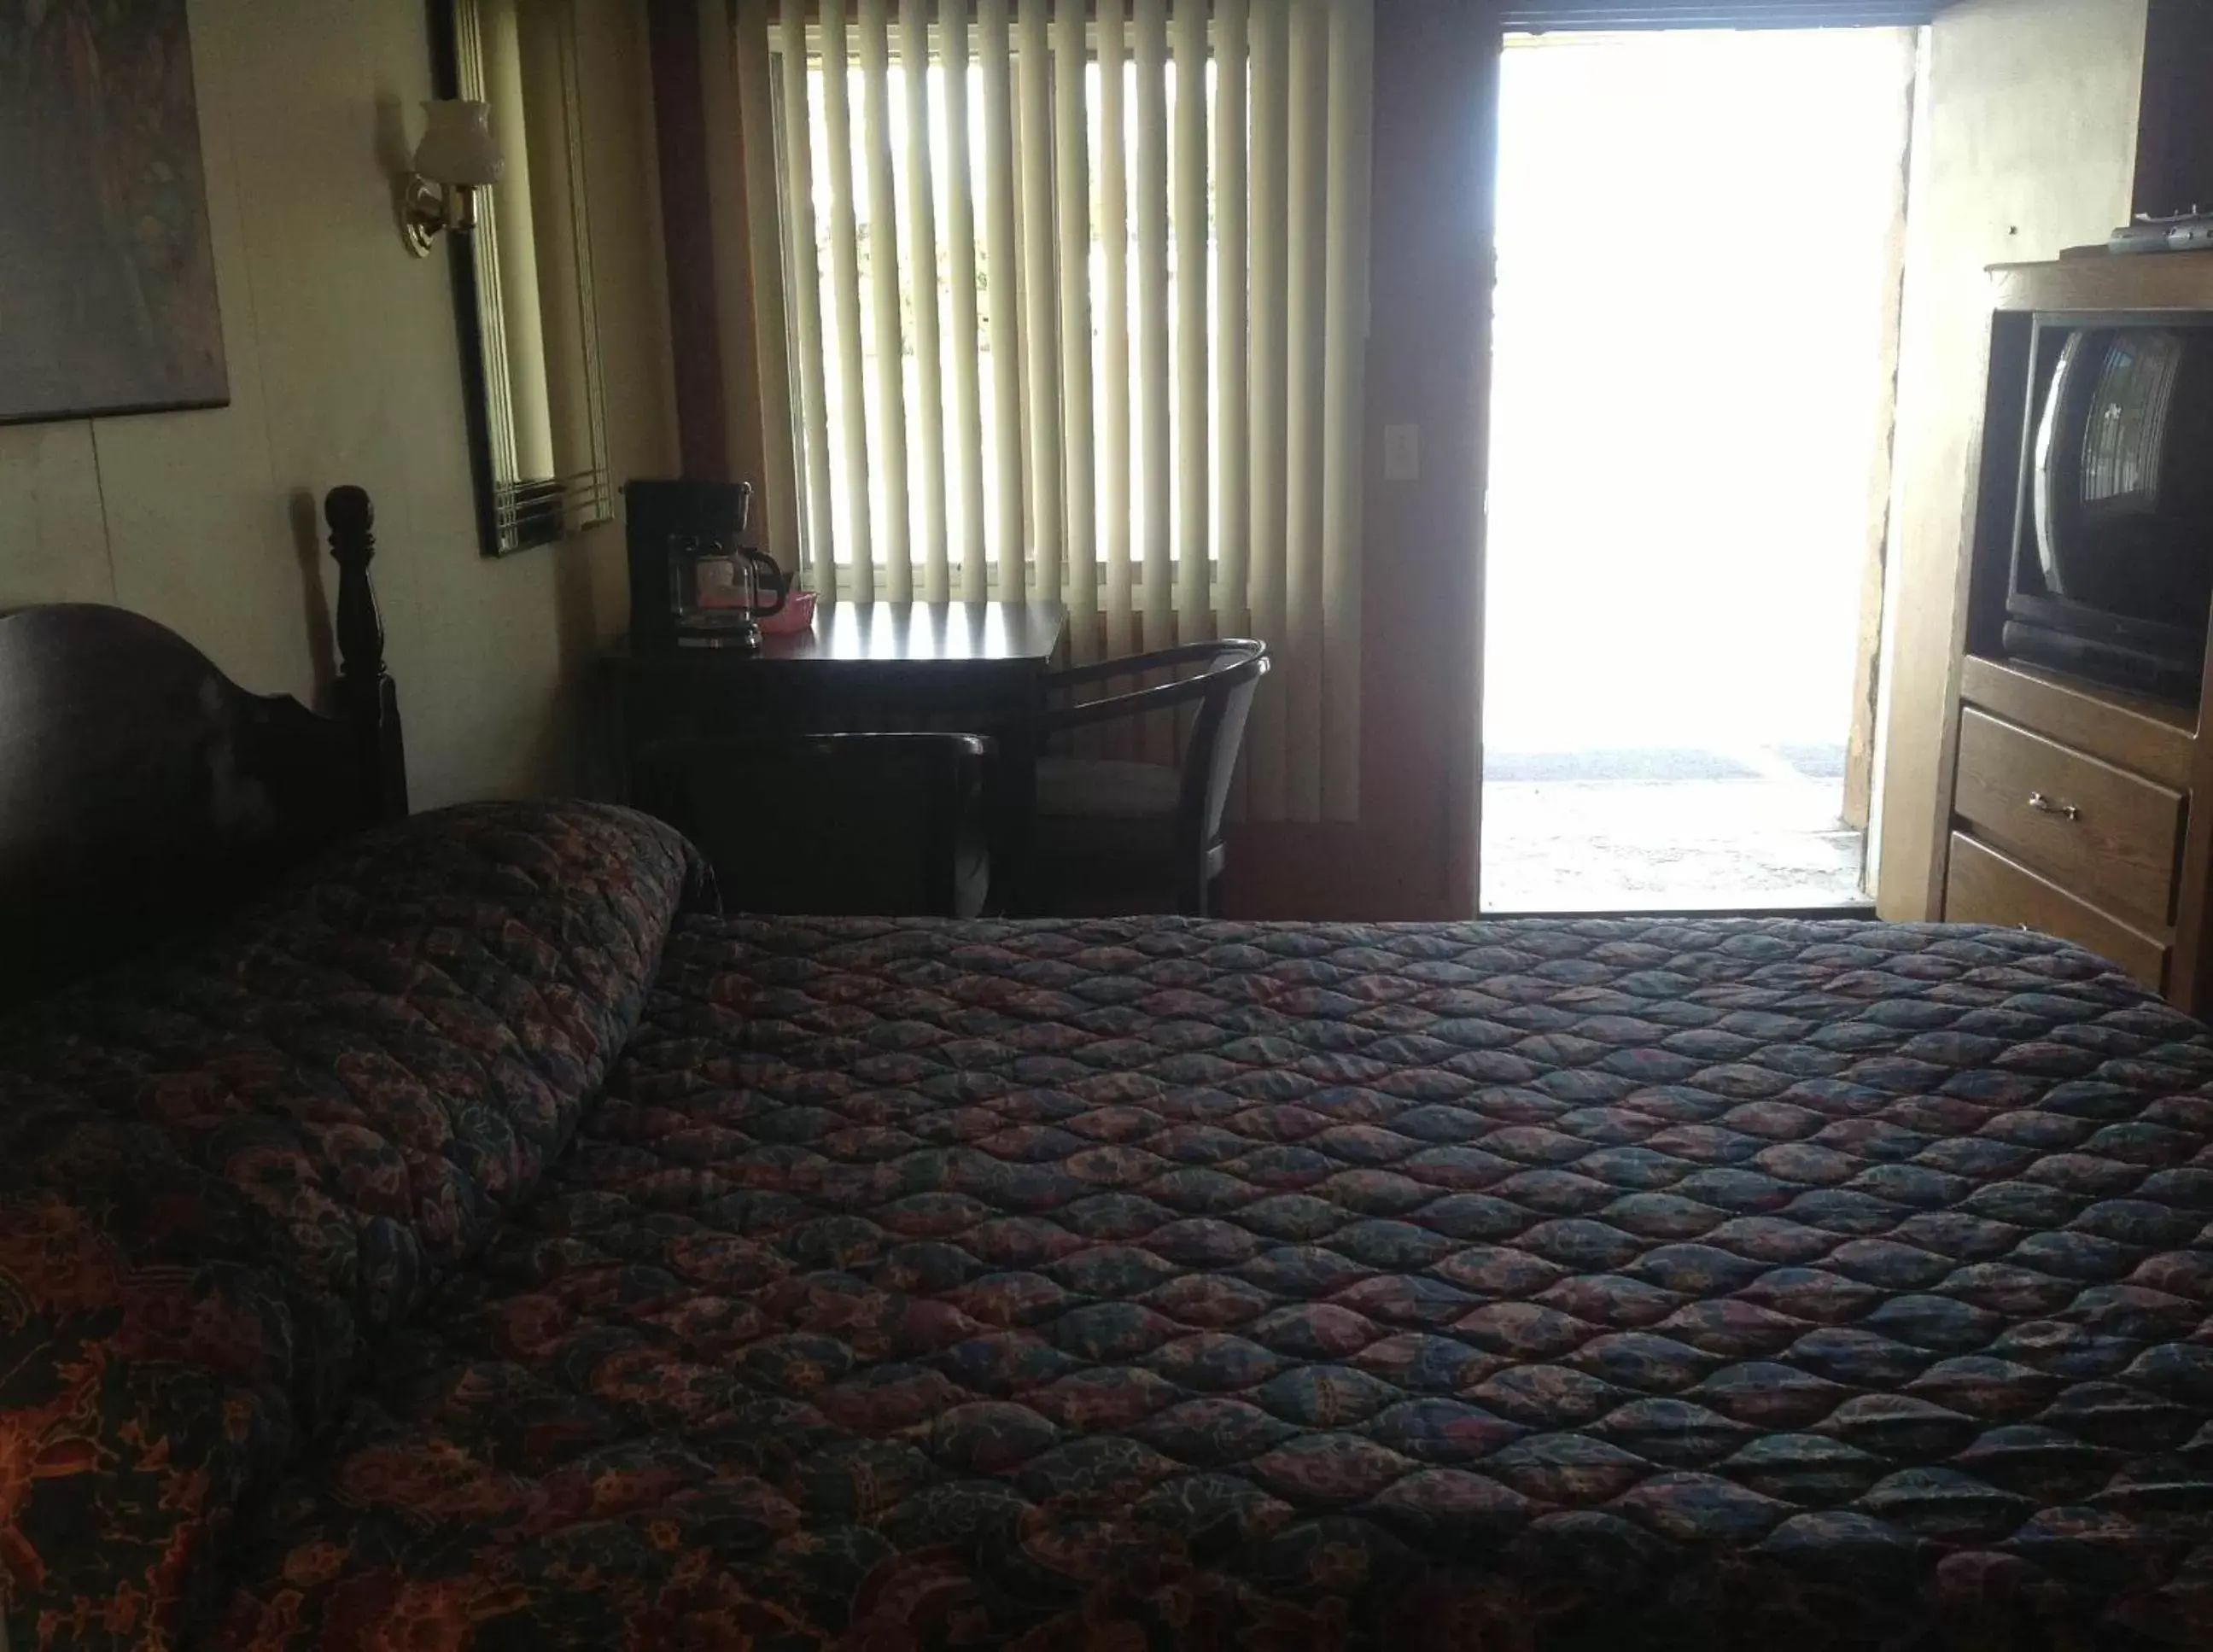 Day, Bed in Budget Inn Motel Chemult